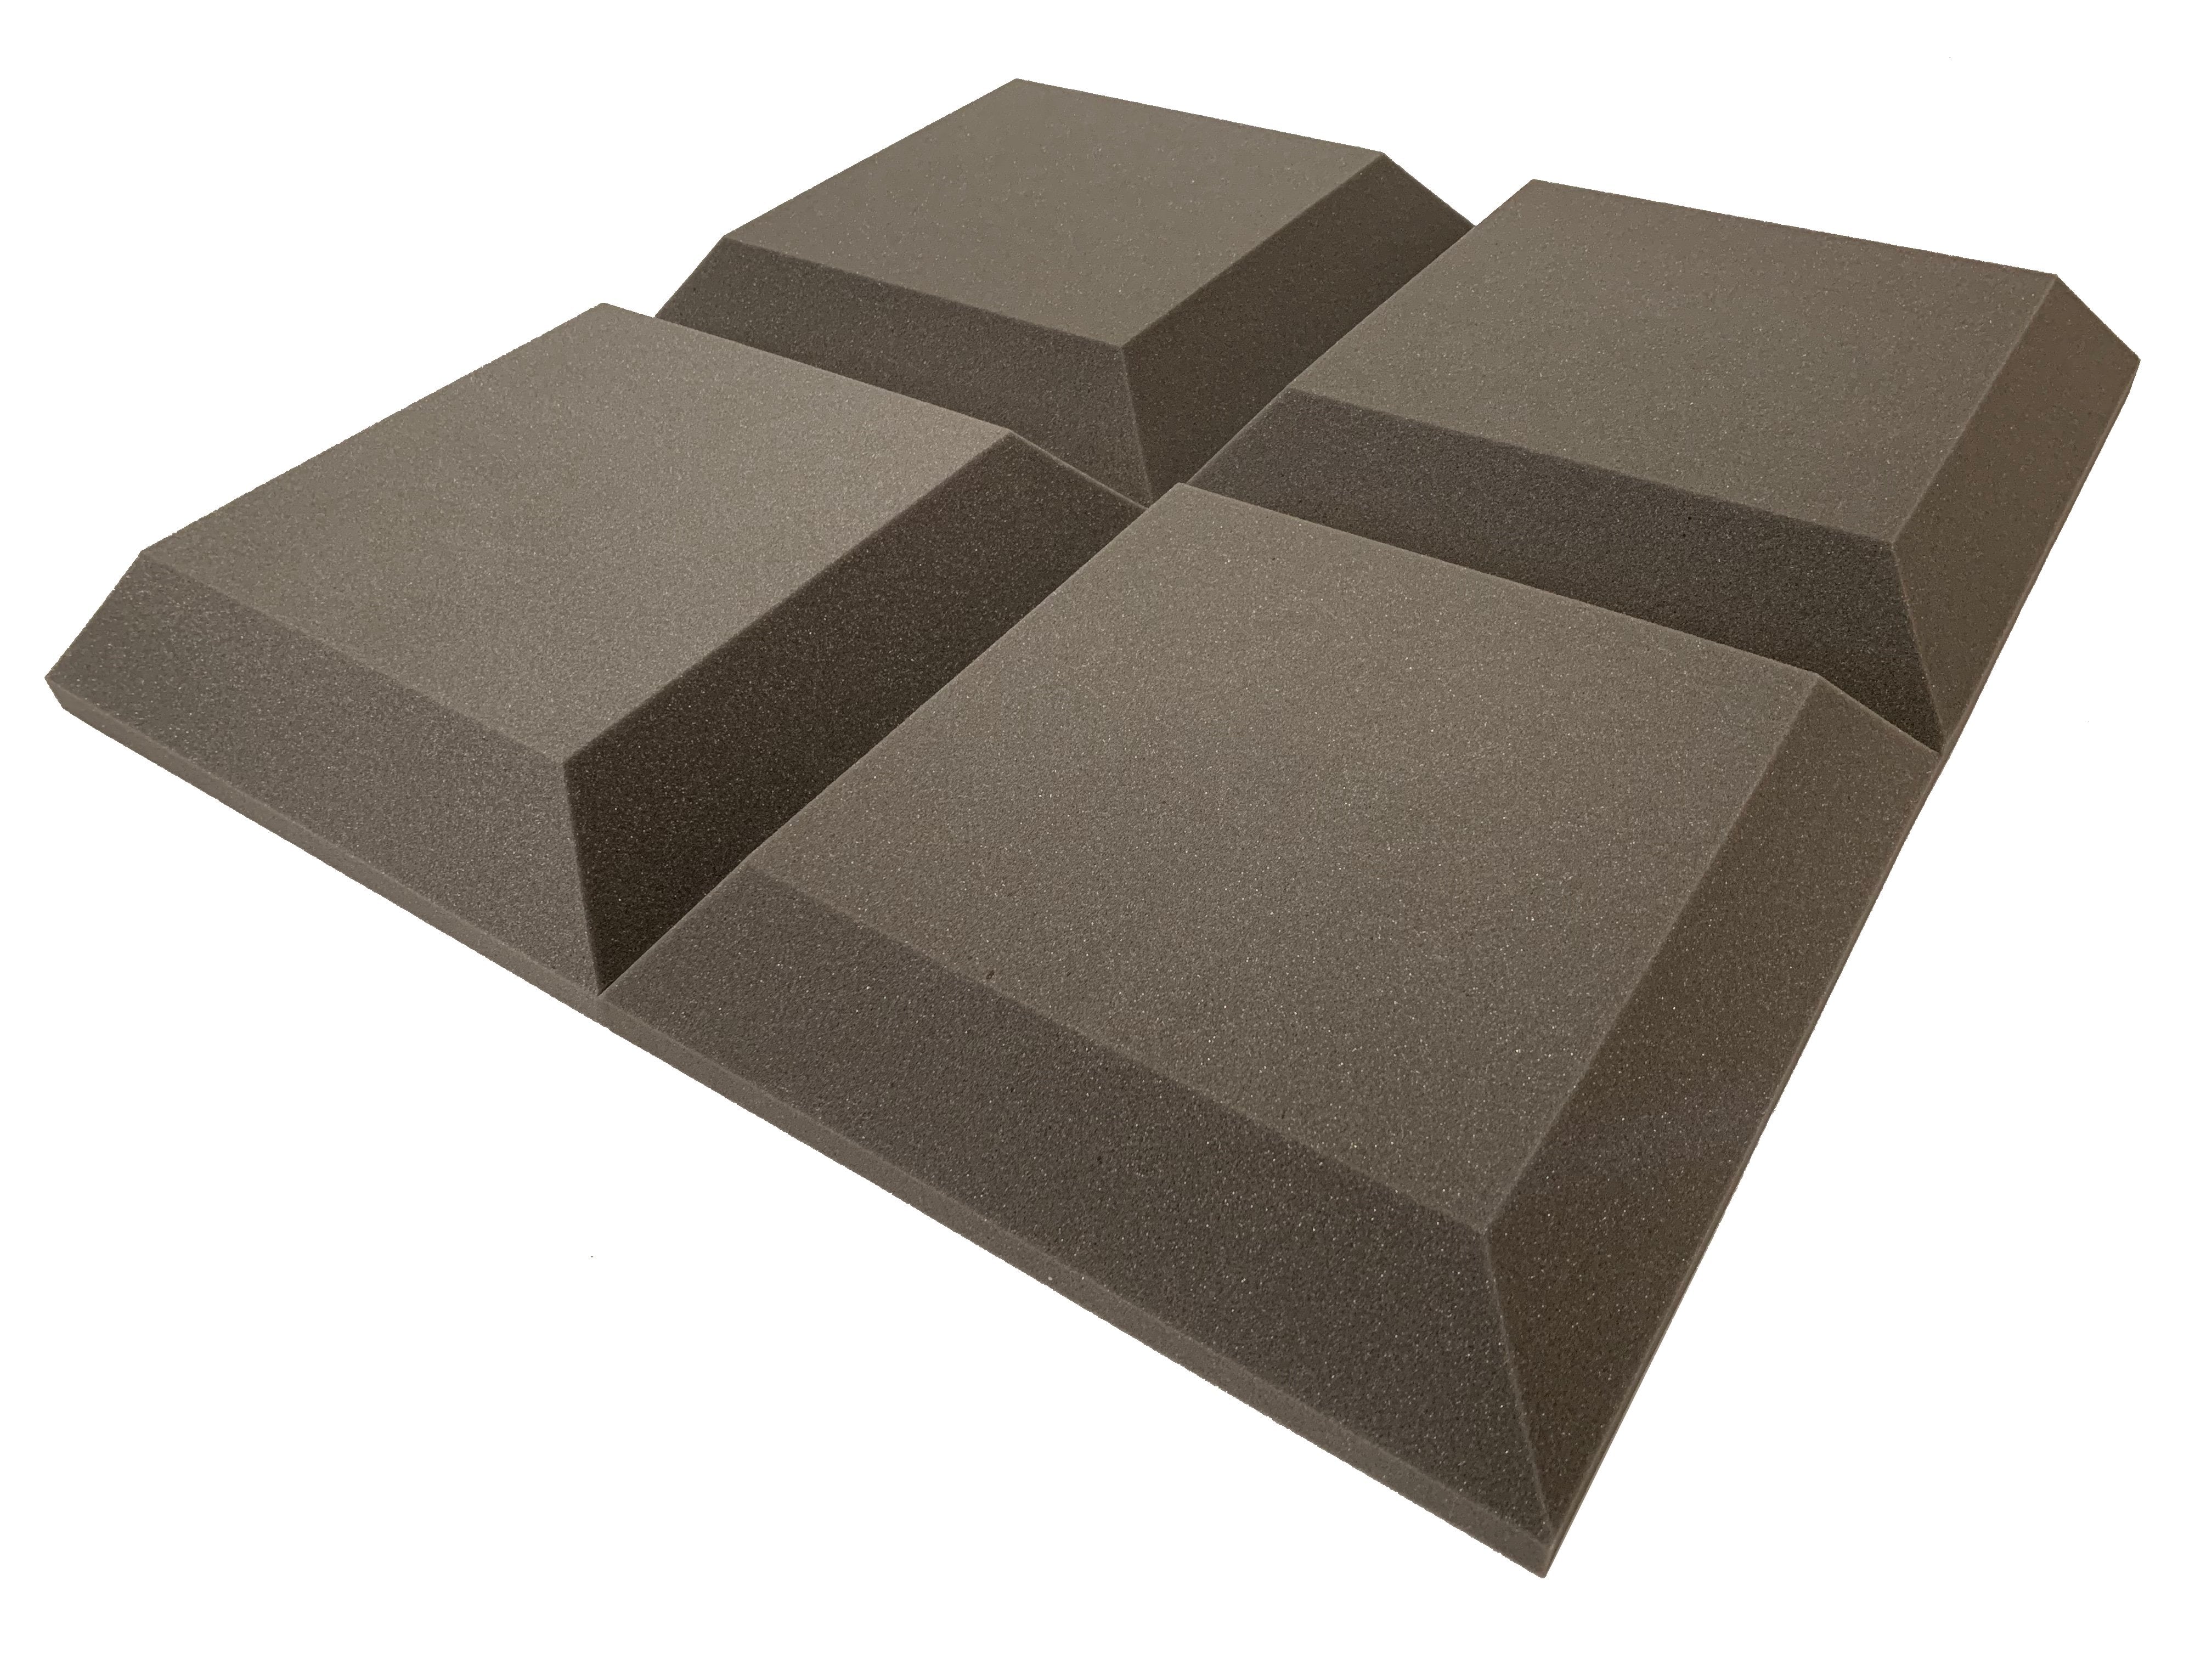 Tegular Kit Acoustic Studio Foam Tile Pack - Advanced Acoustics